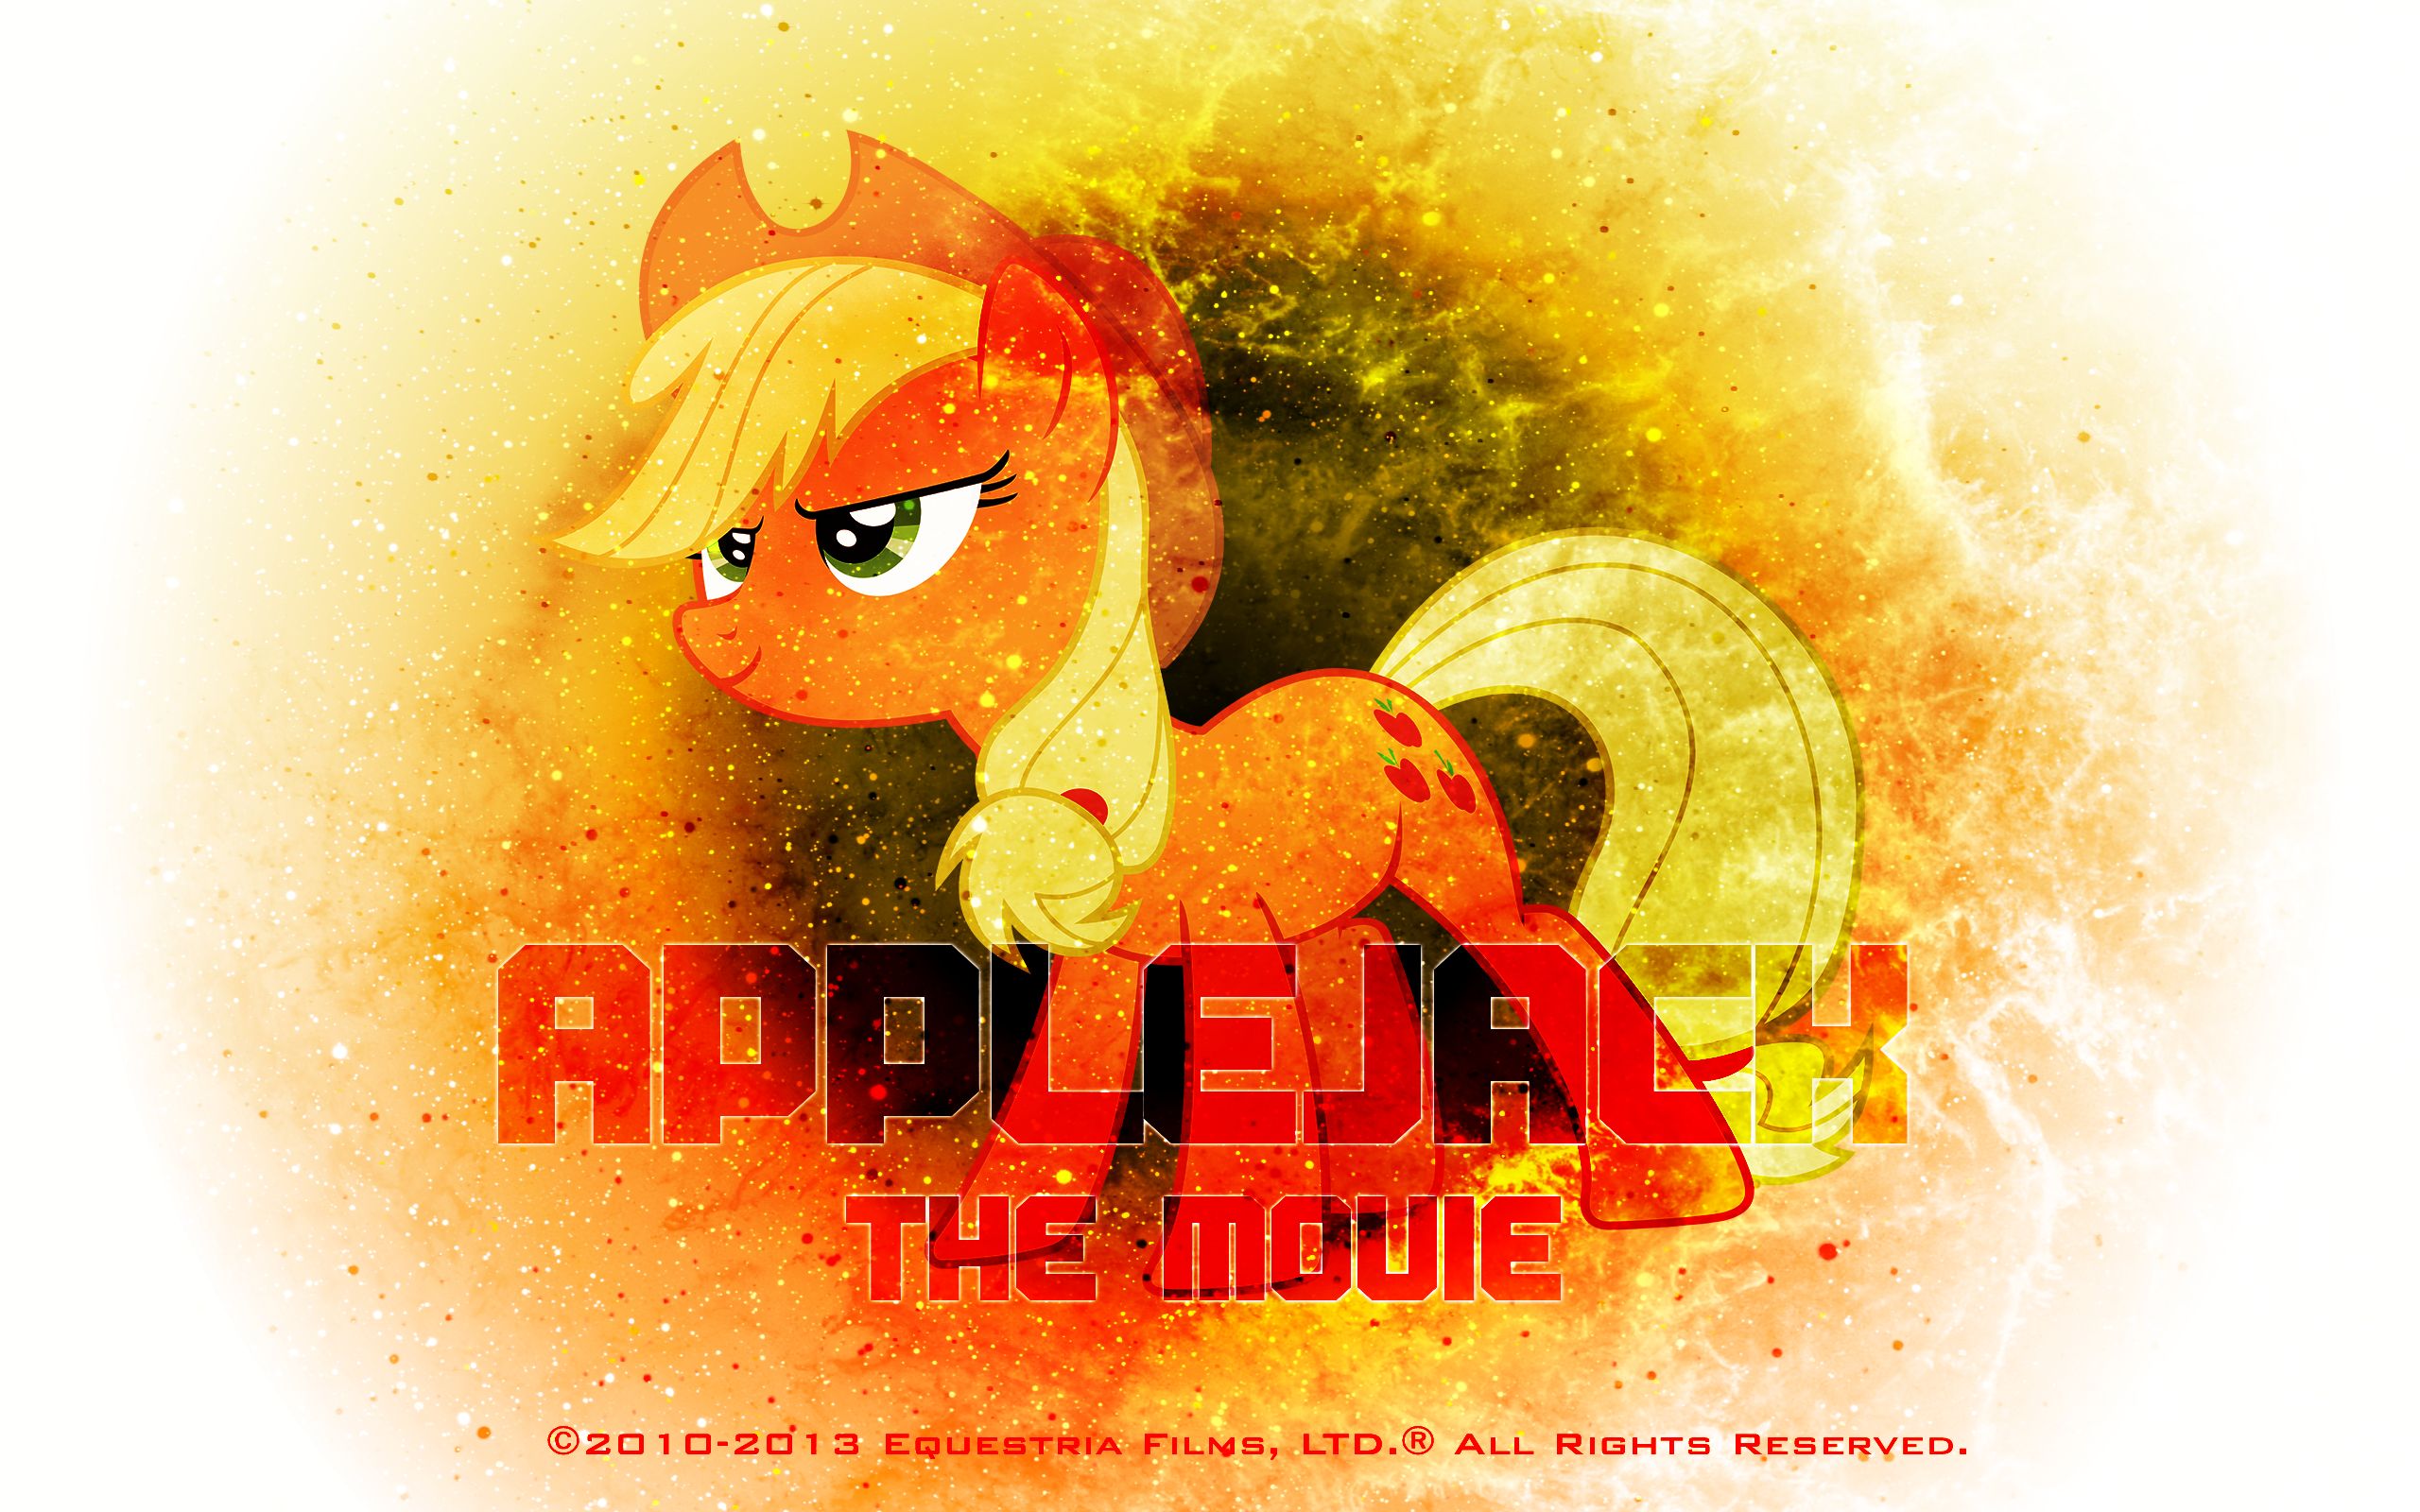 Handy-Wallpaper Applejack (Mein Kleines Pony), My Little Pony Freundschaft Ist Magie, Mein Kleines Pony, Vektor, Fernsehserien kostenlos herunterladen.